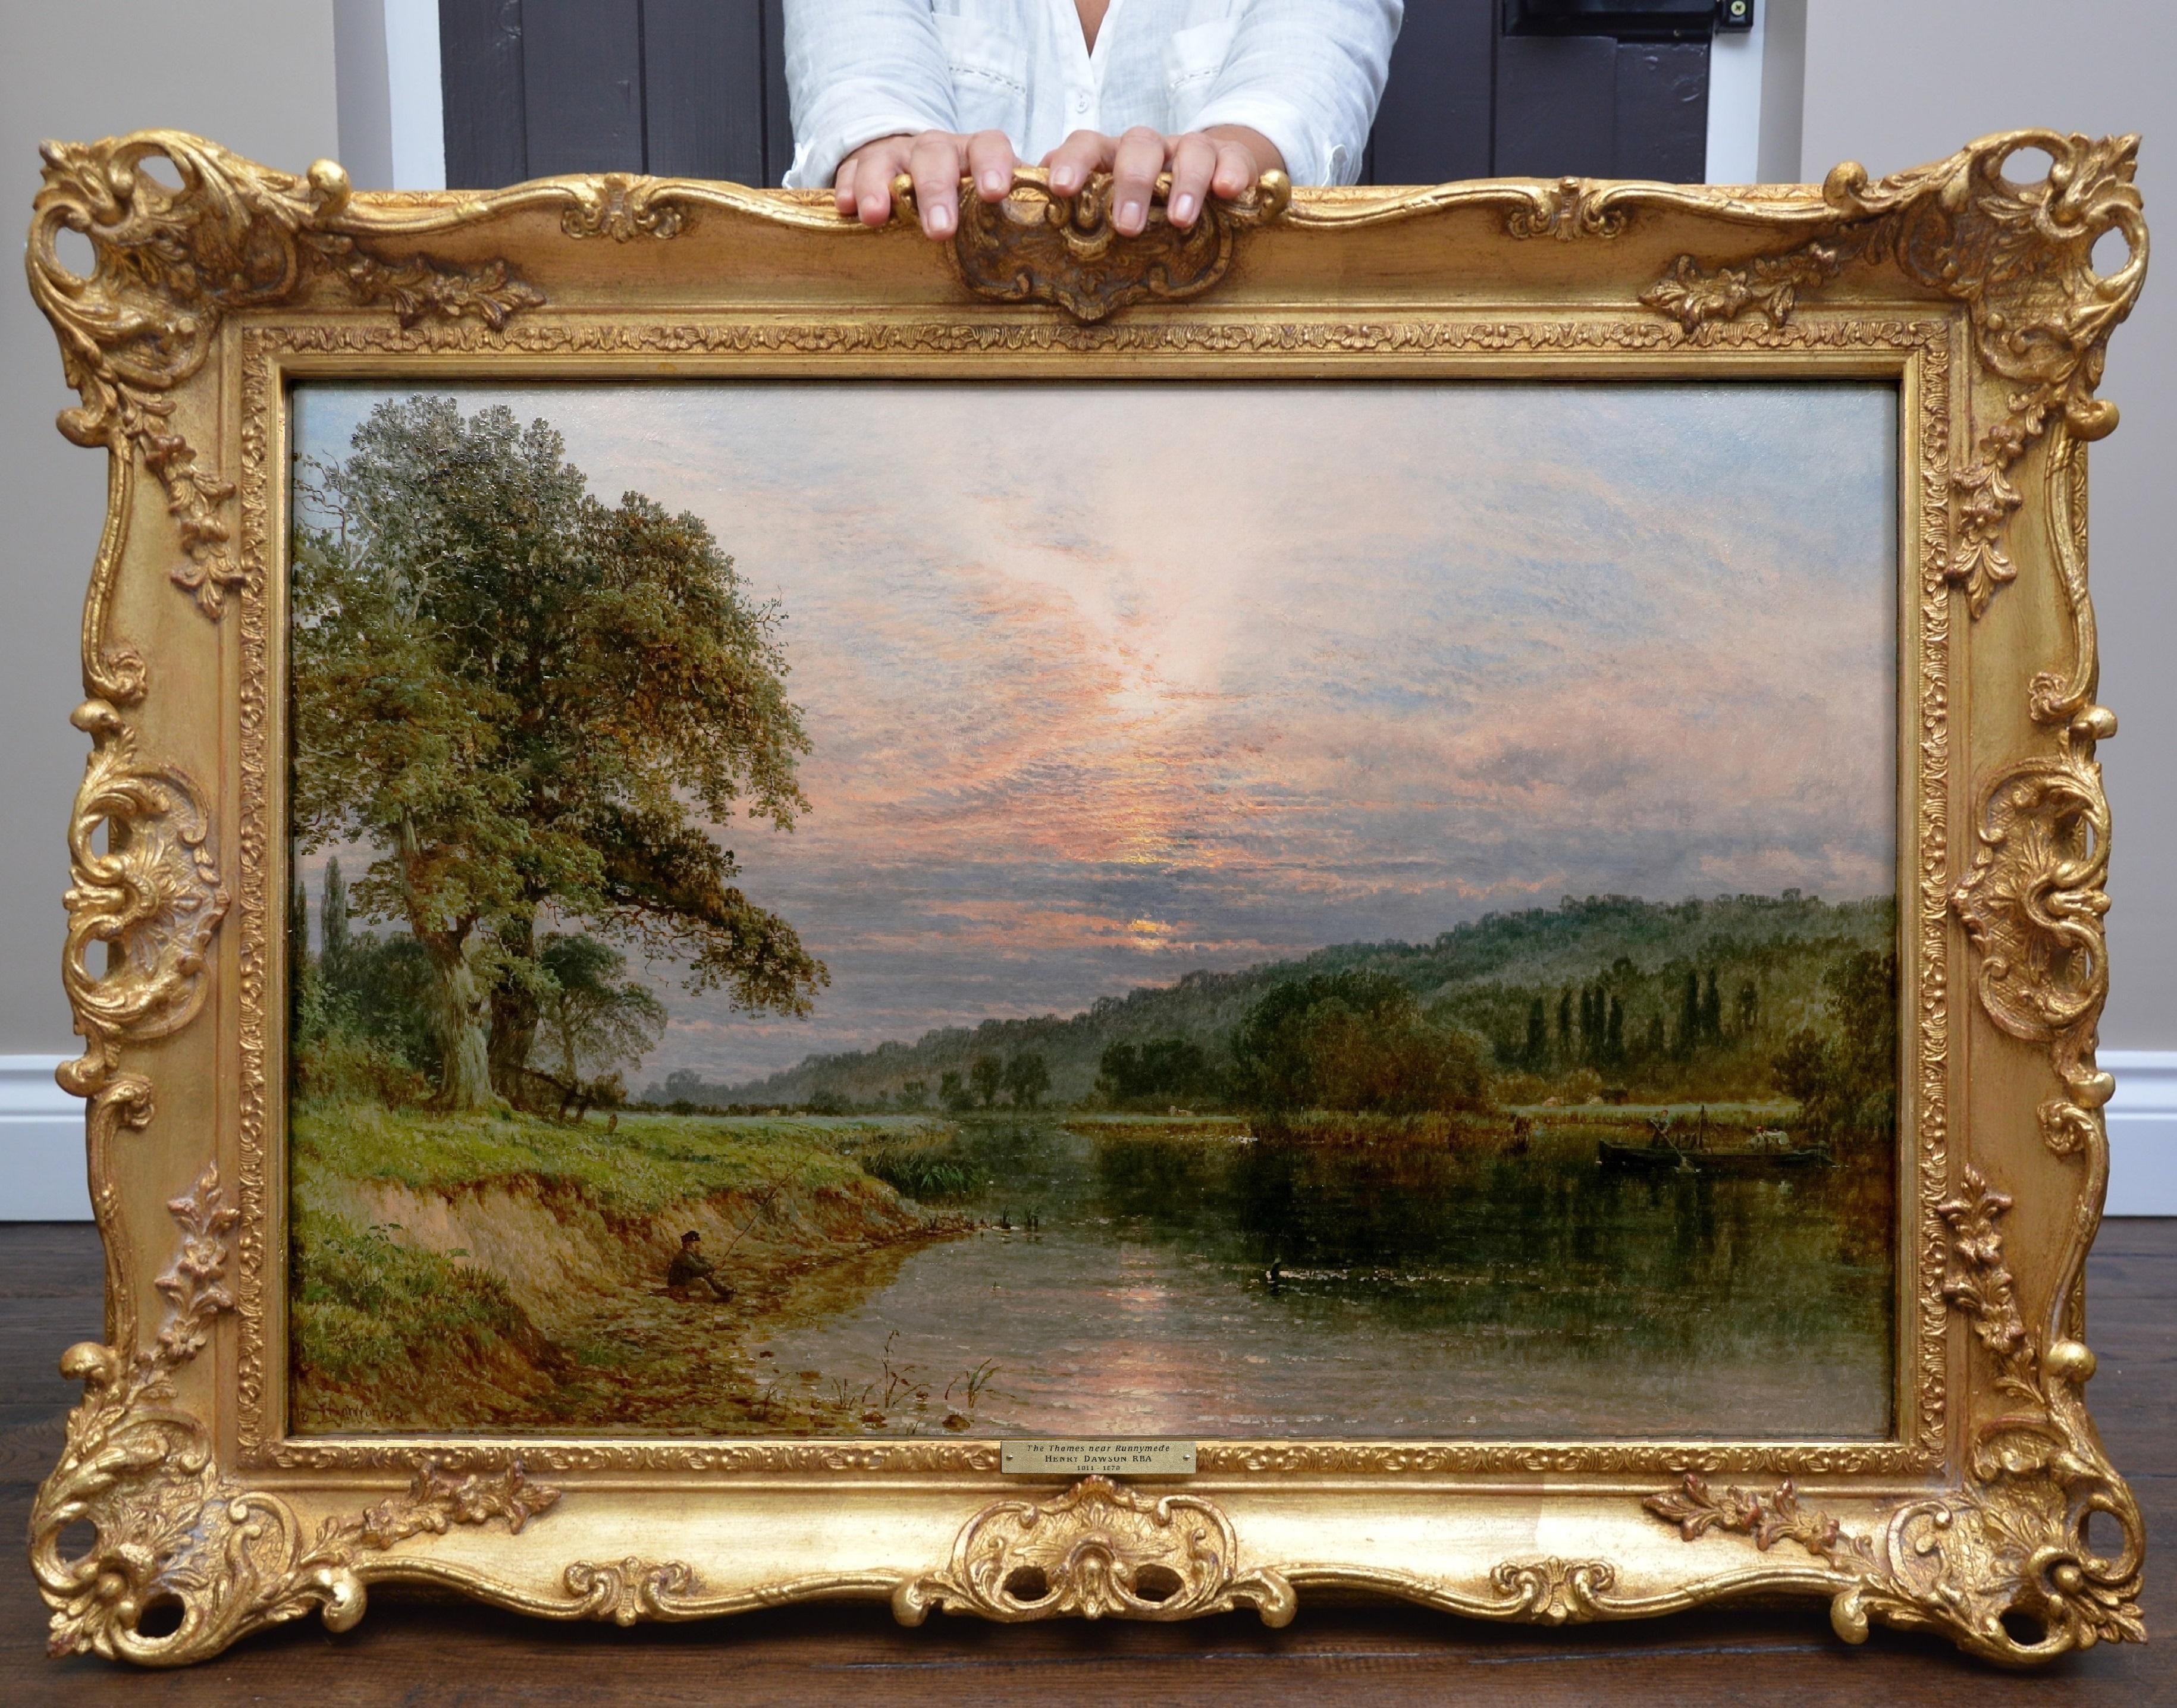 Figurative Painting Henry Dawson - The Thames n° Runnymeade - Exposition du 19e siècle - Peinture à l'huile - Paysage de rivière